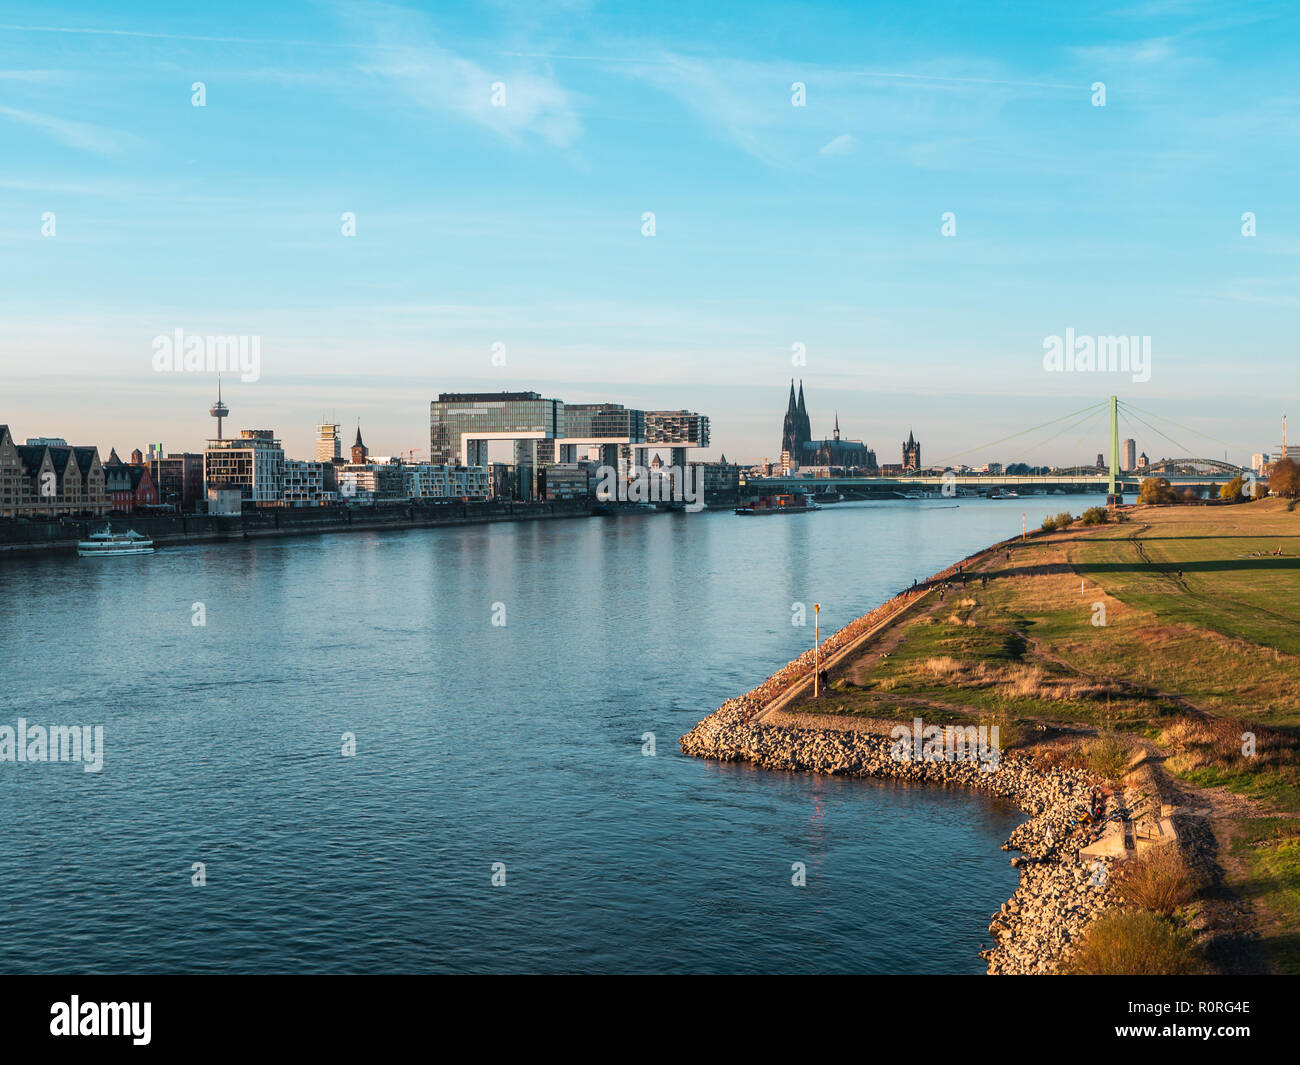 L'automne à Cologne : rues de la région de Cologne, Allemagne avec cathédrale et d'autres repères - Poller Wiesen en premier plan Banque D'Images